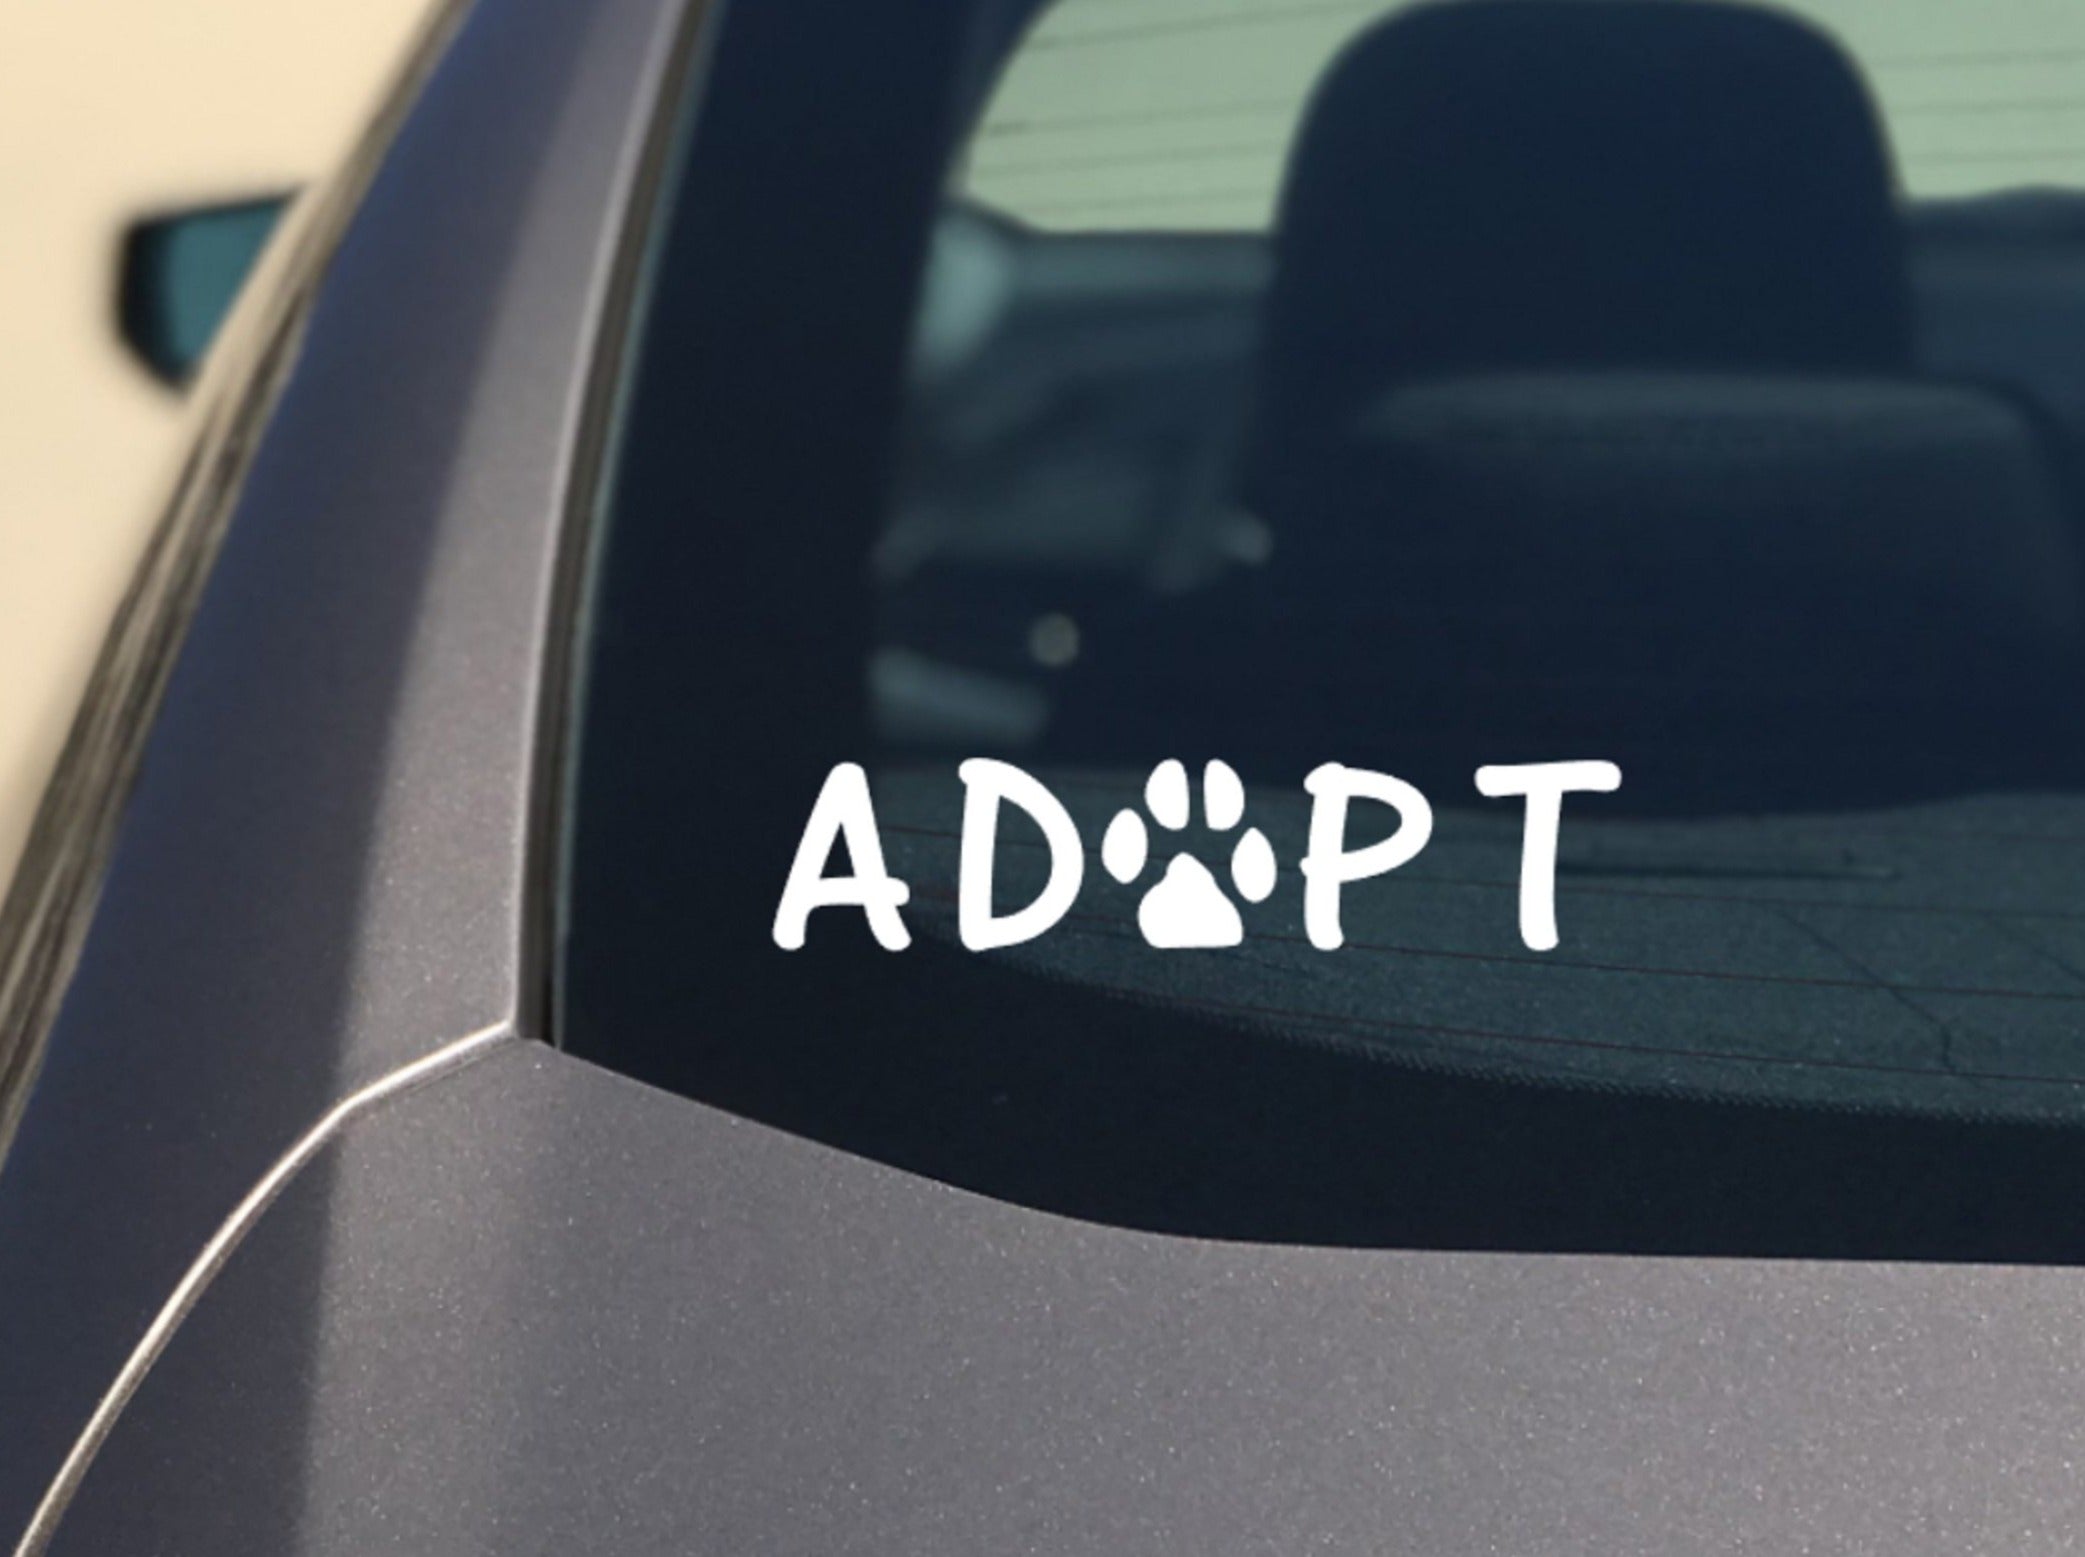 ADOPT Dog Car Decal / Sticker - My Crafty Dog